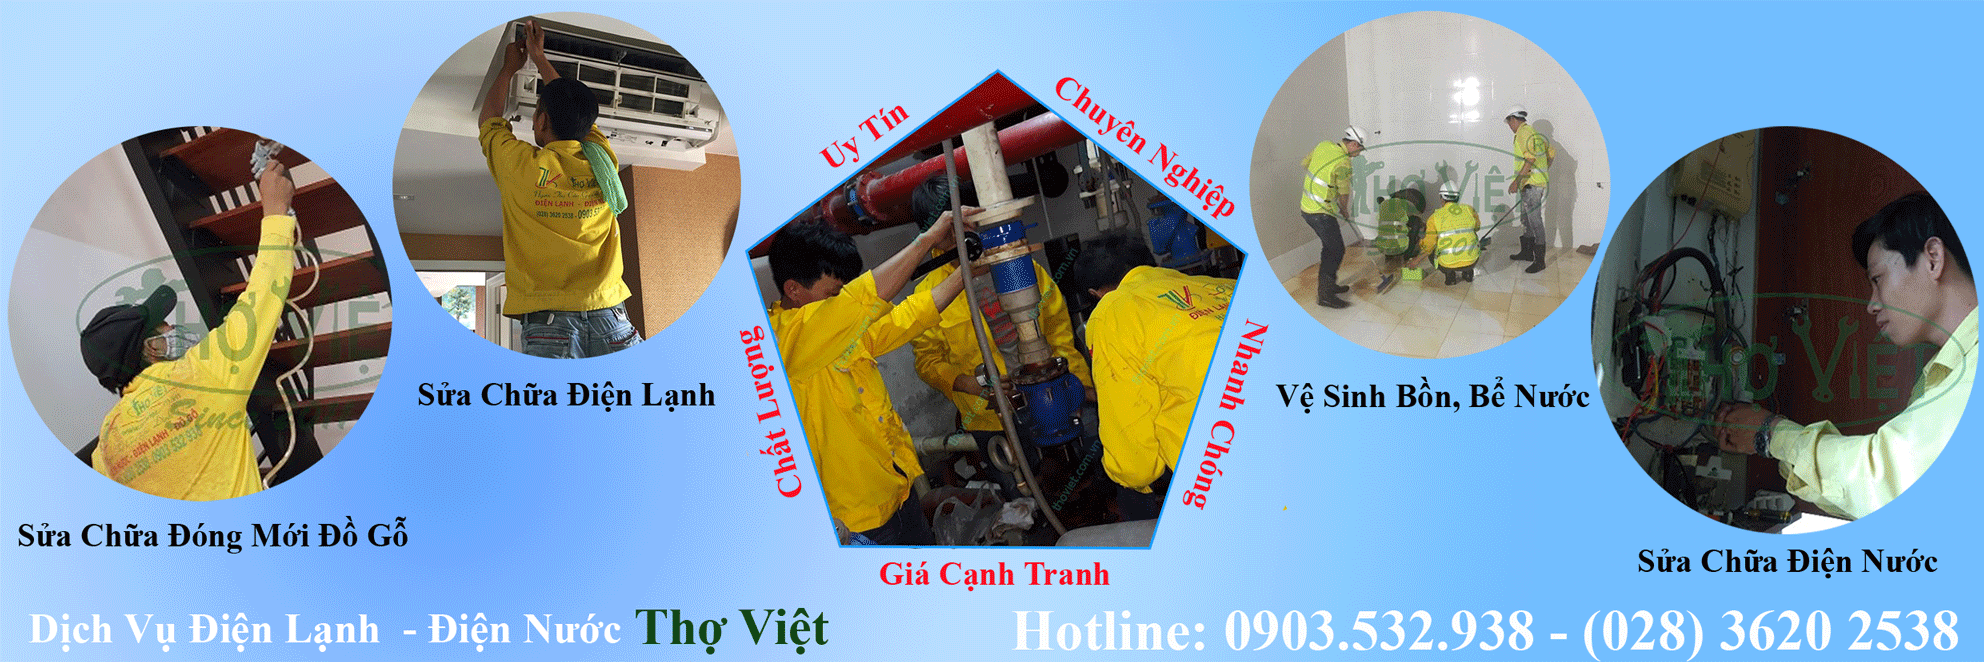 Dịch vụ vệ sinh máy lạnh Thợ Việt